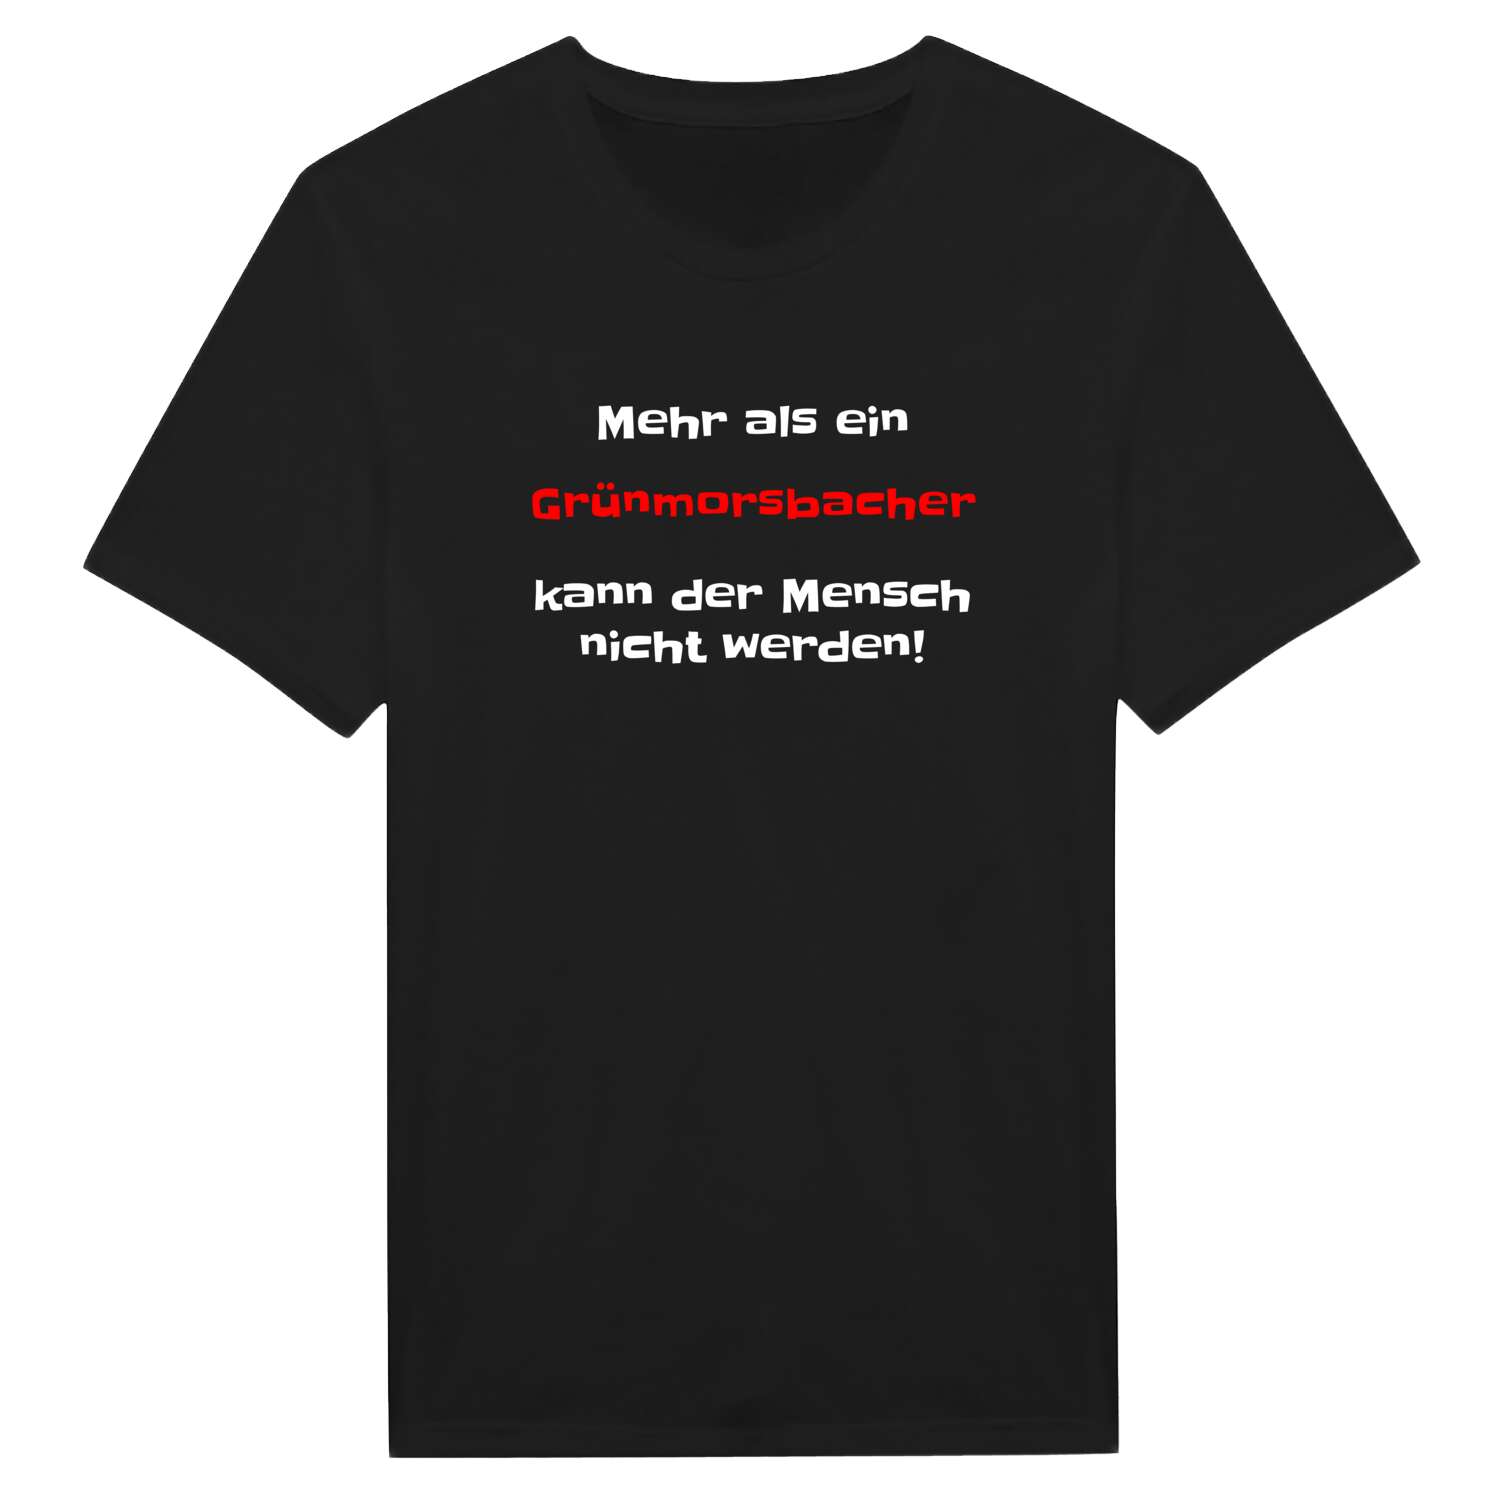 Grünmorsbach T-Shirt »Mehr als ein«